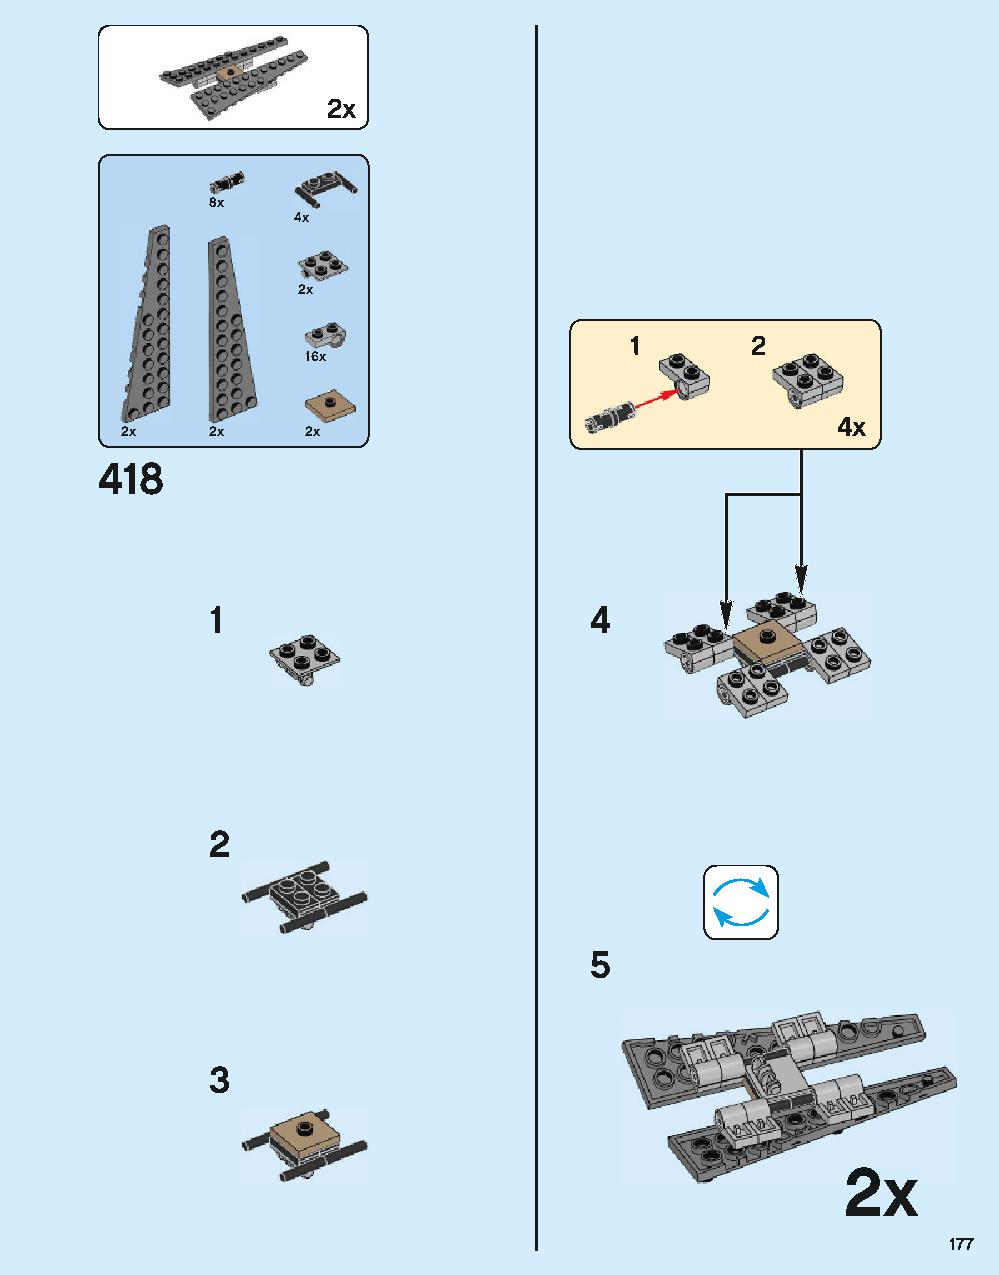 ホグワーツ城 71043 レゴの商品情報 レゴの説明書・組立方法 177 page